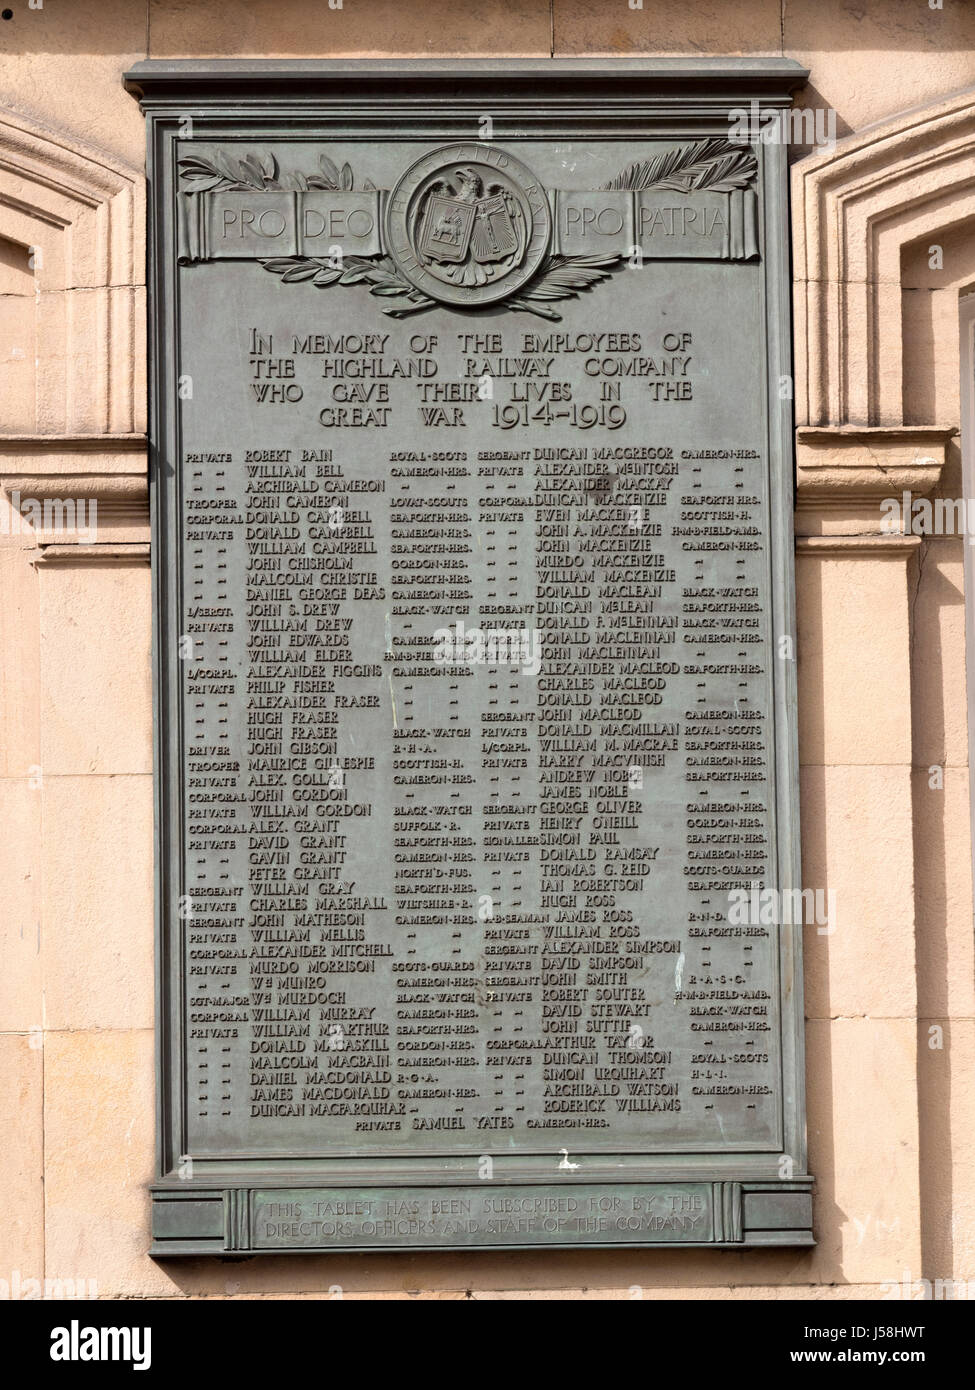 Una lapide commemorativa in memoria dei dipendenti delle Highland azienda ferroviaria che morì durante la Grande guerra 1914-1919, Inverness stazione ferroviaria, Inverness Foto Stock